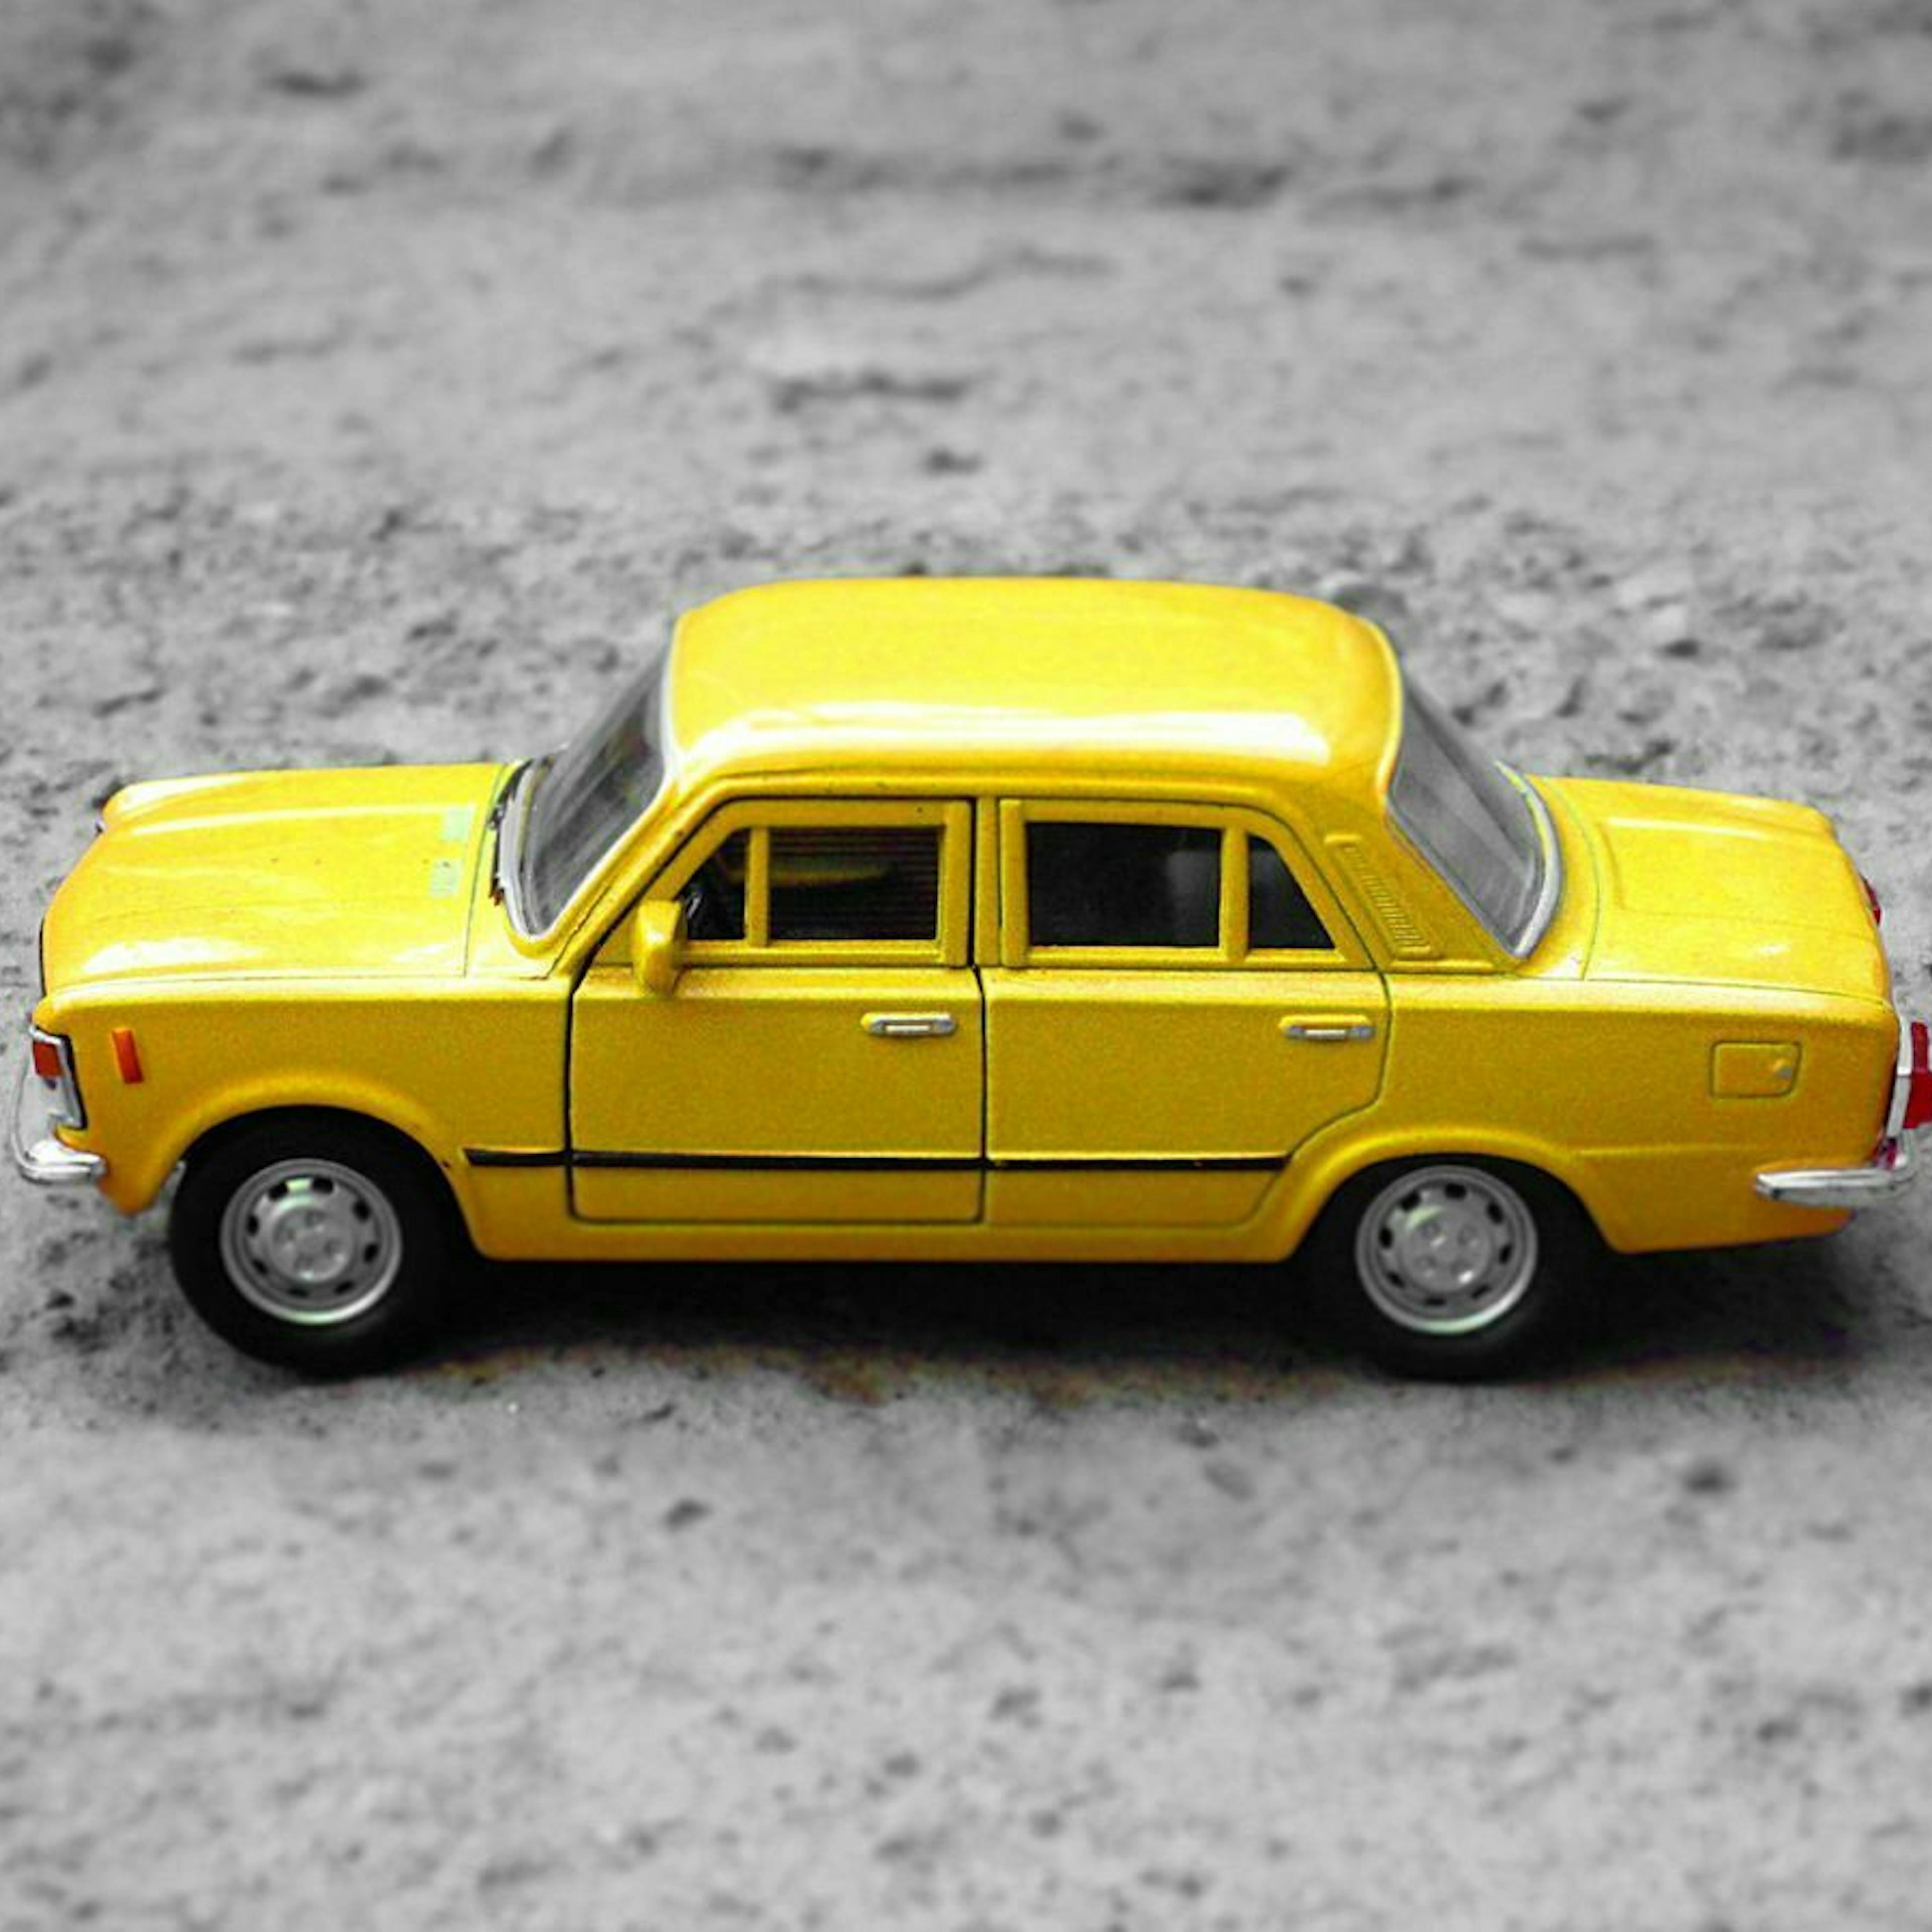 Ein gelbes Spielzeugauto steht auf einem grauen Steinboden